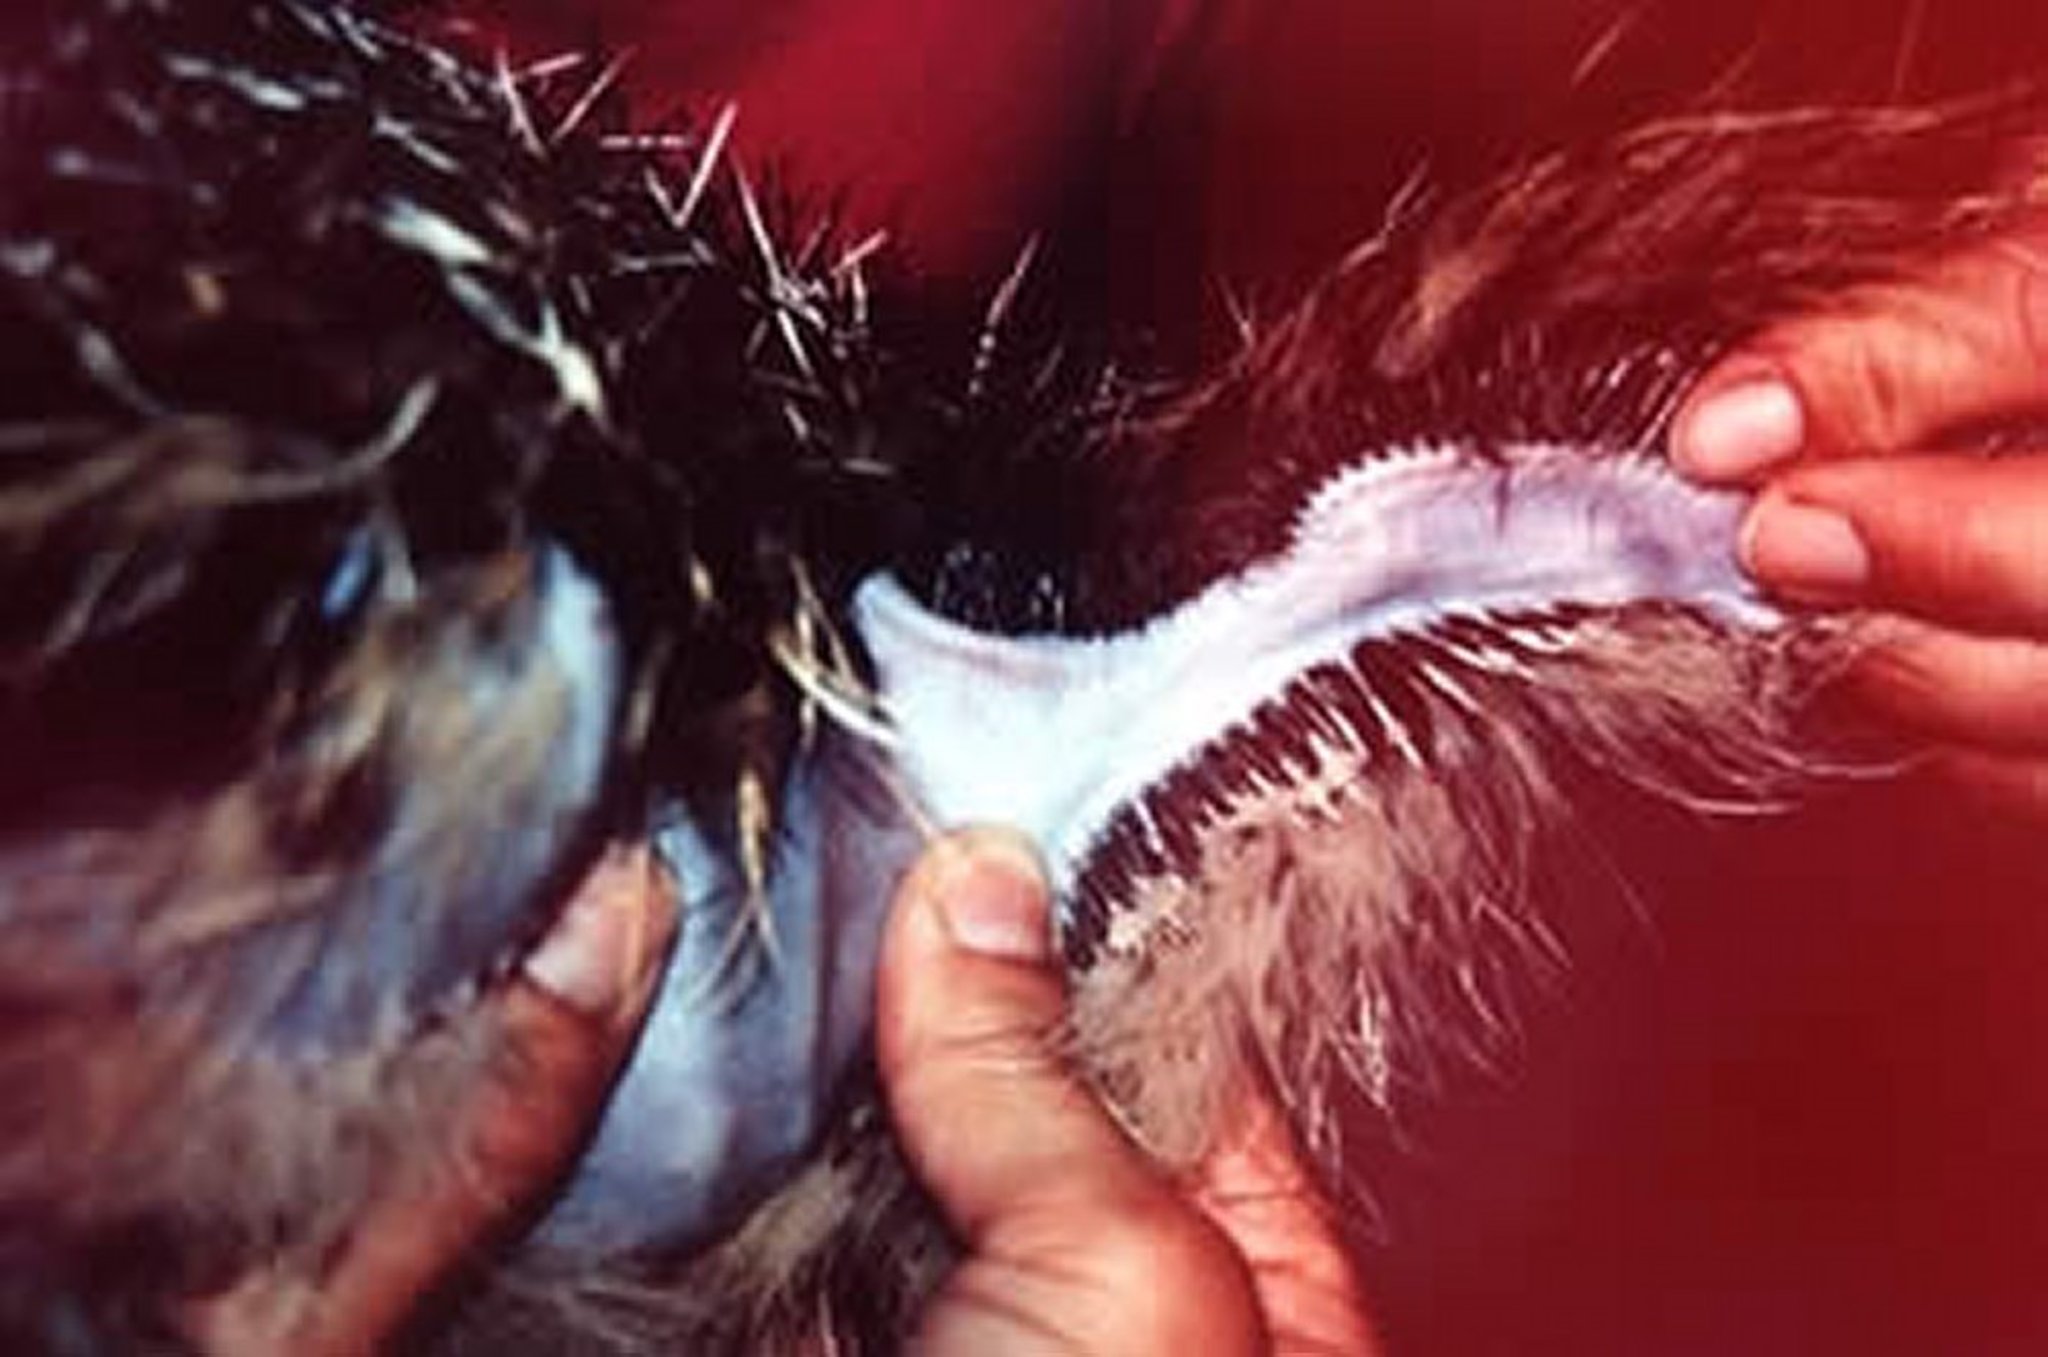 Cutaneous ulnar vein, ostrich chick